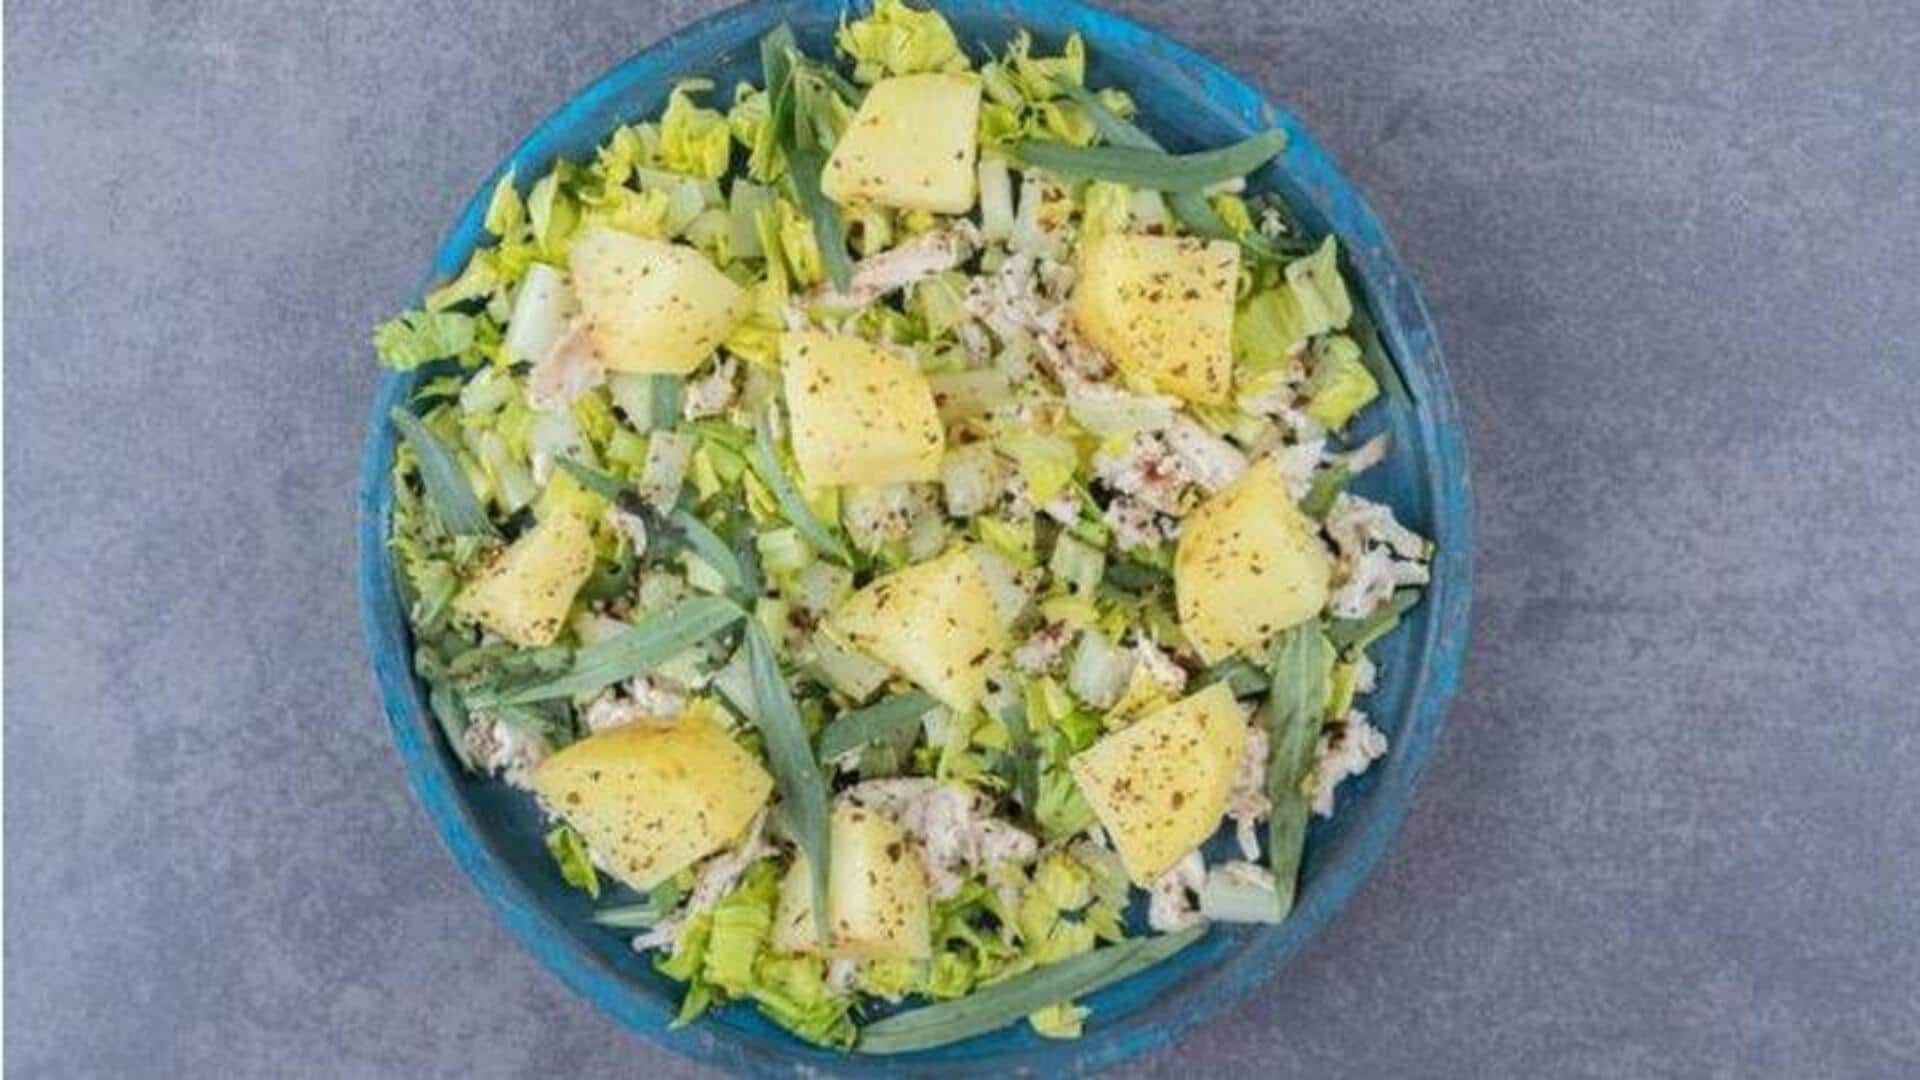 Resep Salad Waldorf Klasik Yang Digemari Pecinta Gaya Hidup Sehat